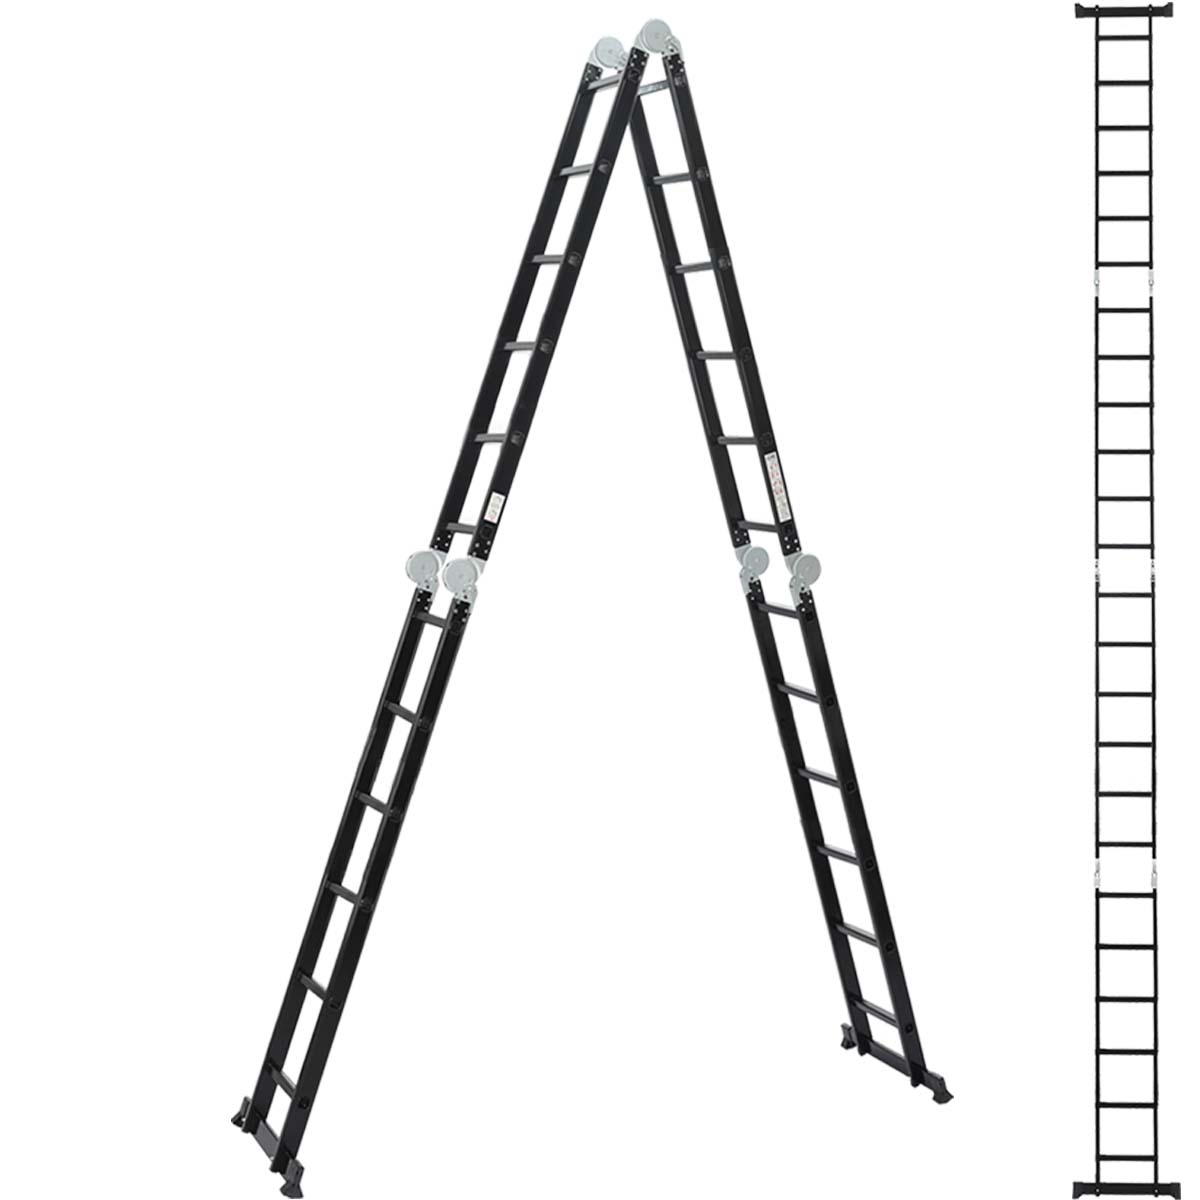 Vouwladder 4 x 6 treden 6,20 meter zonder platform - ALDORR Professional